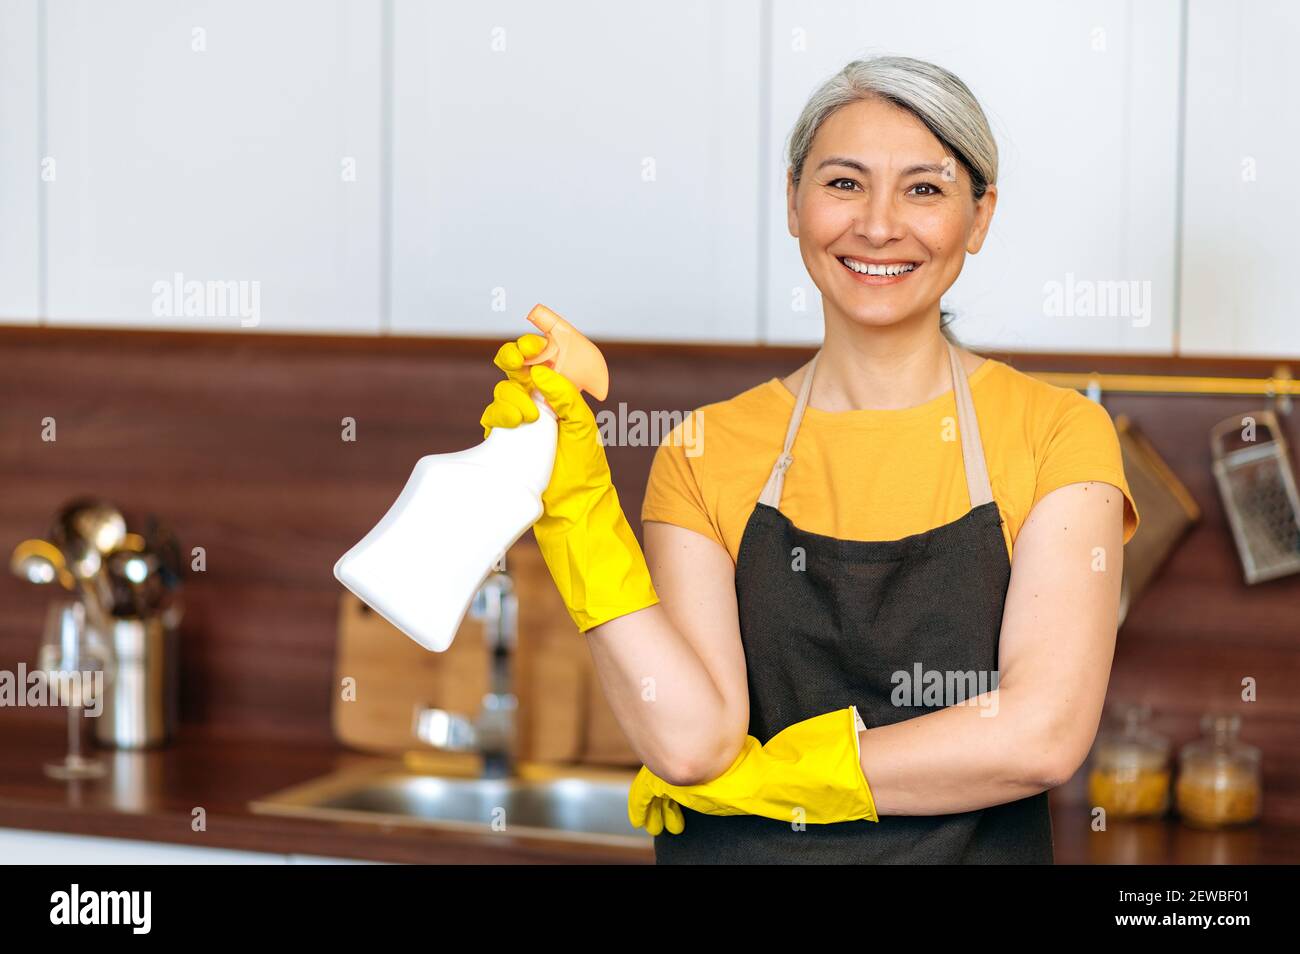 Zufrieden lächelnd reife asiatische Hausfrau oder Putzfrau in gelben Handschuhen und einer Schürze, hält Waschmittel, bereit zu Hause oder im Büro Reinigung, schaut auf die Kamera Stockfoto